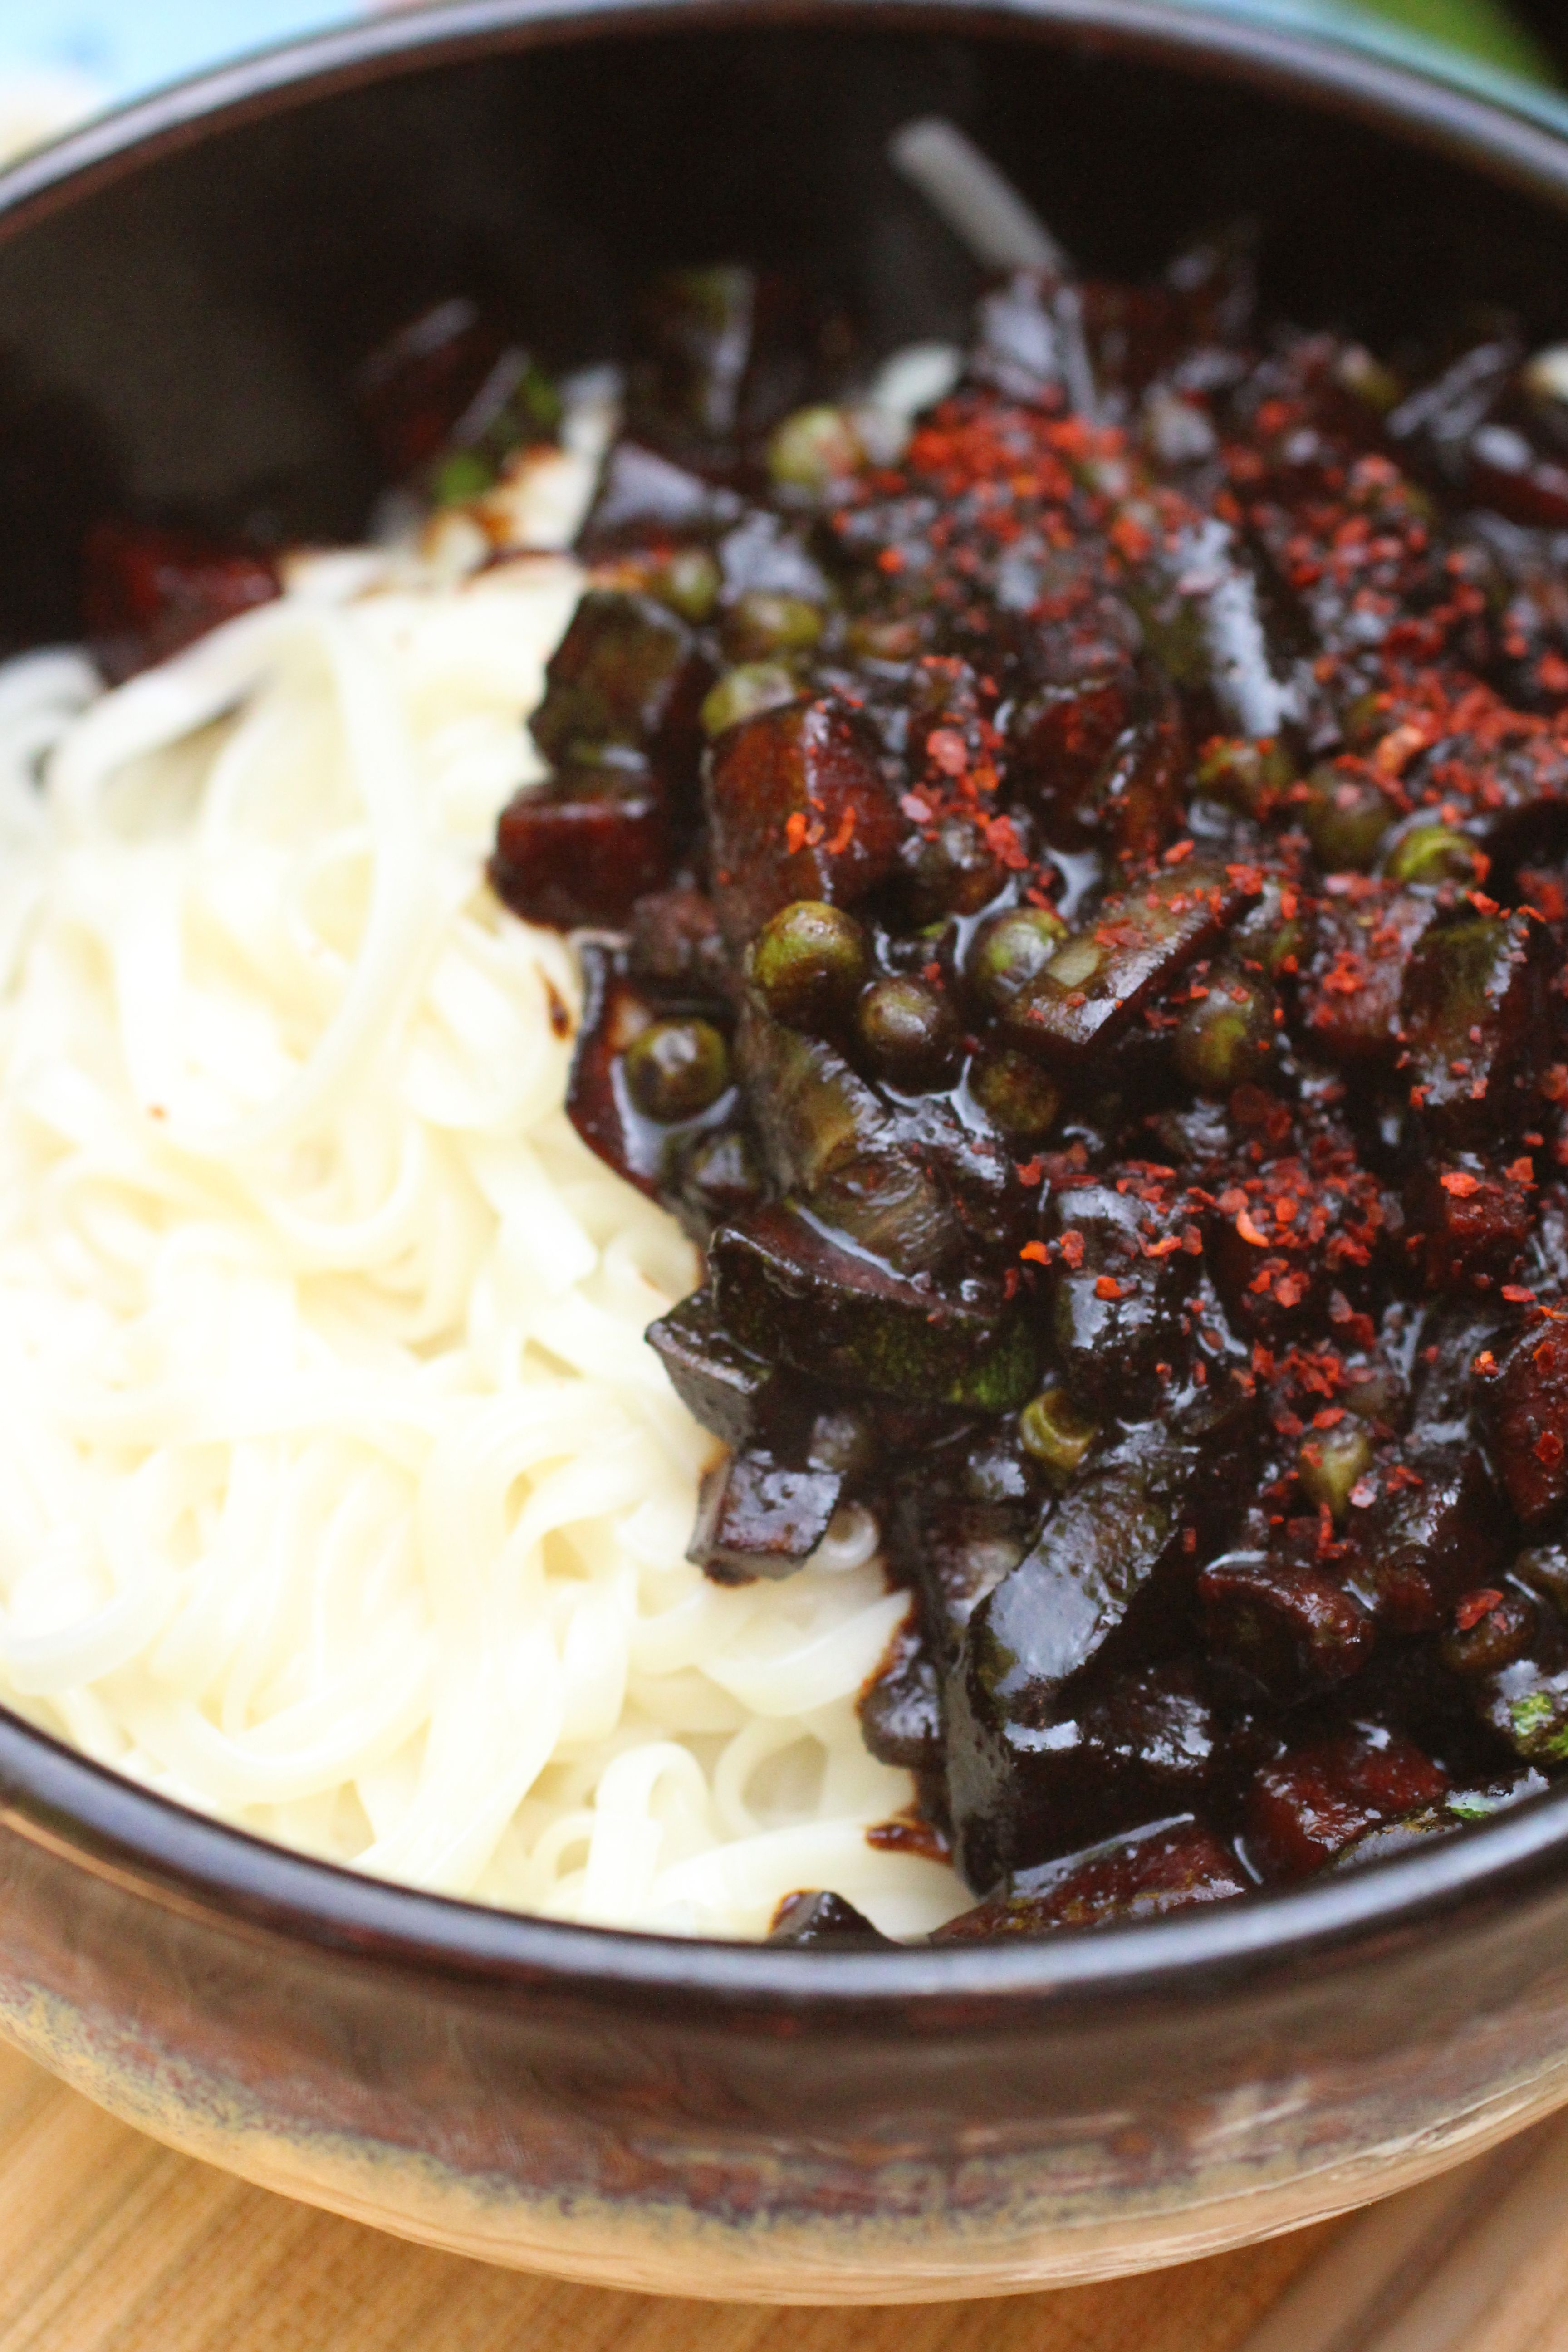 Nouilles à la sauce aux haricots noirs (jjajangmyun) - CORÉE